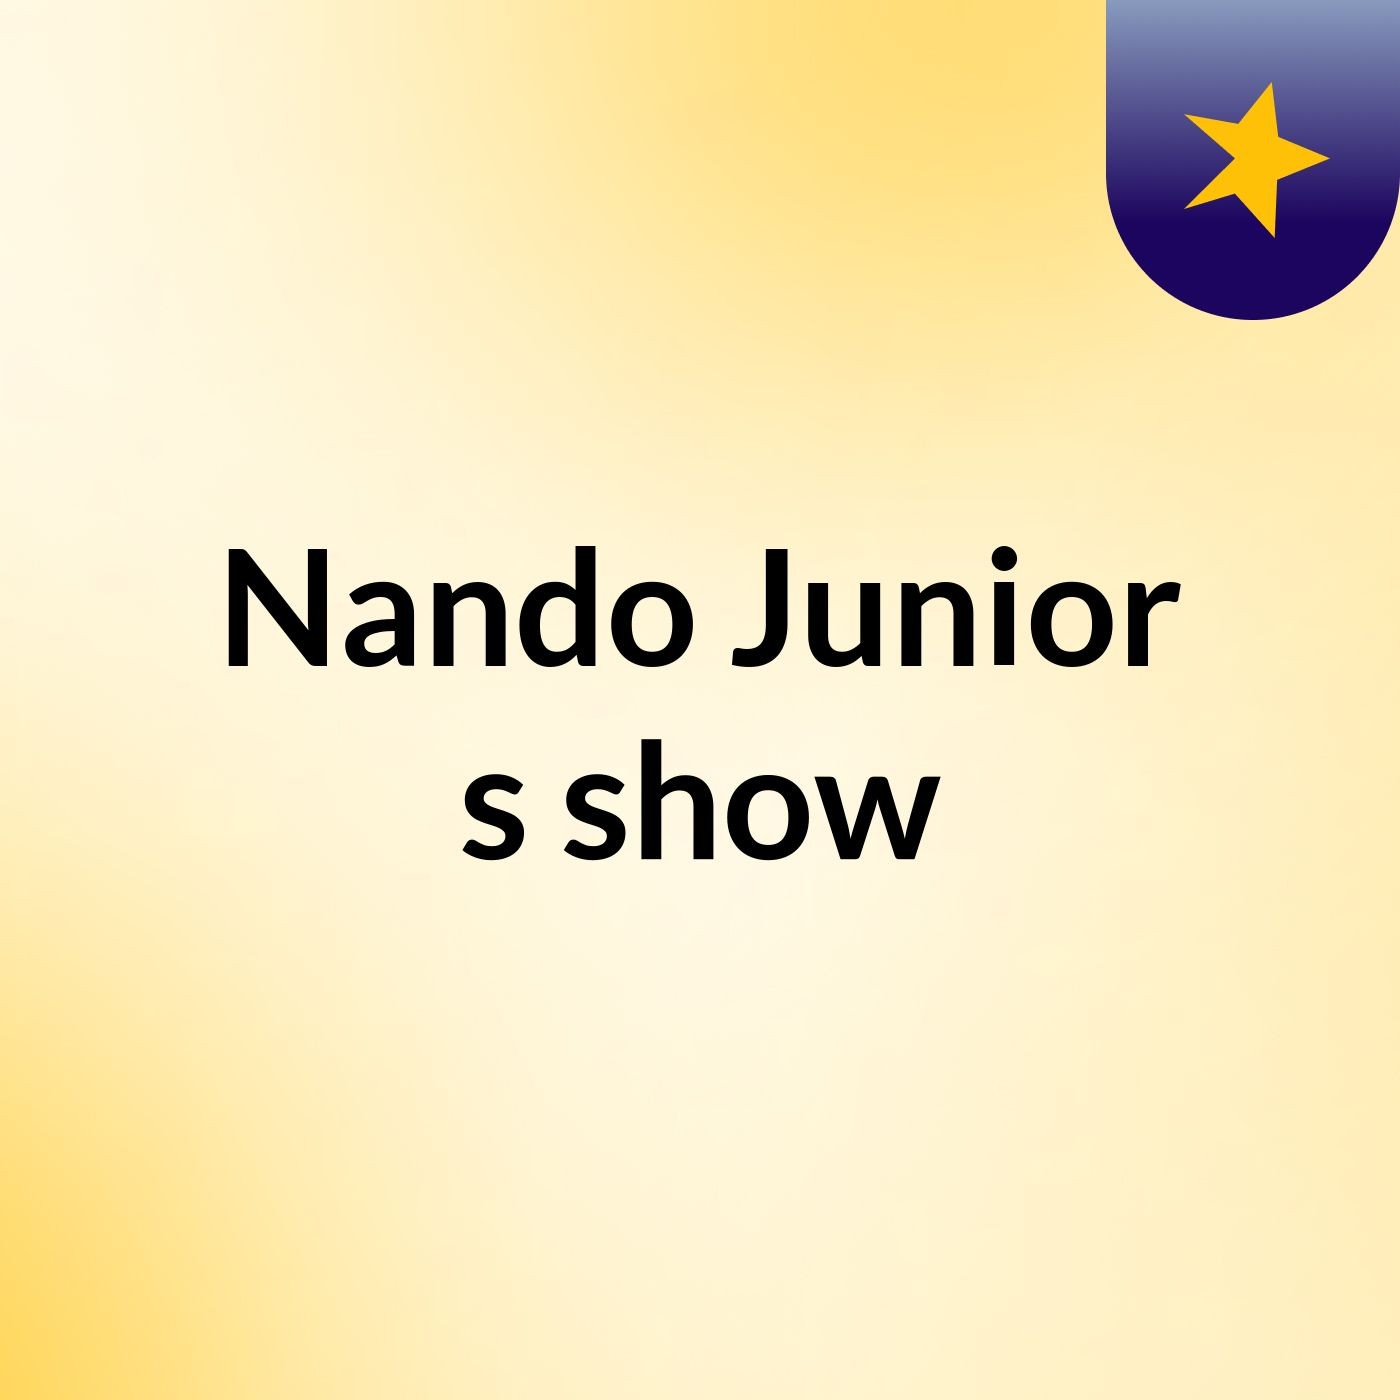 Nando Junior's show